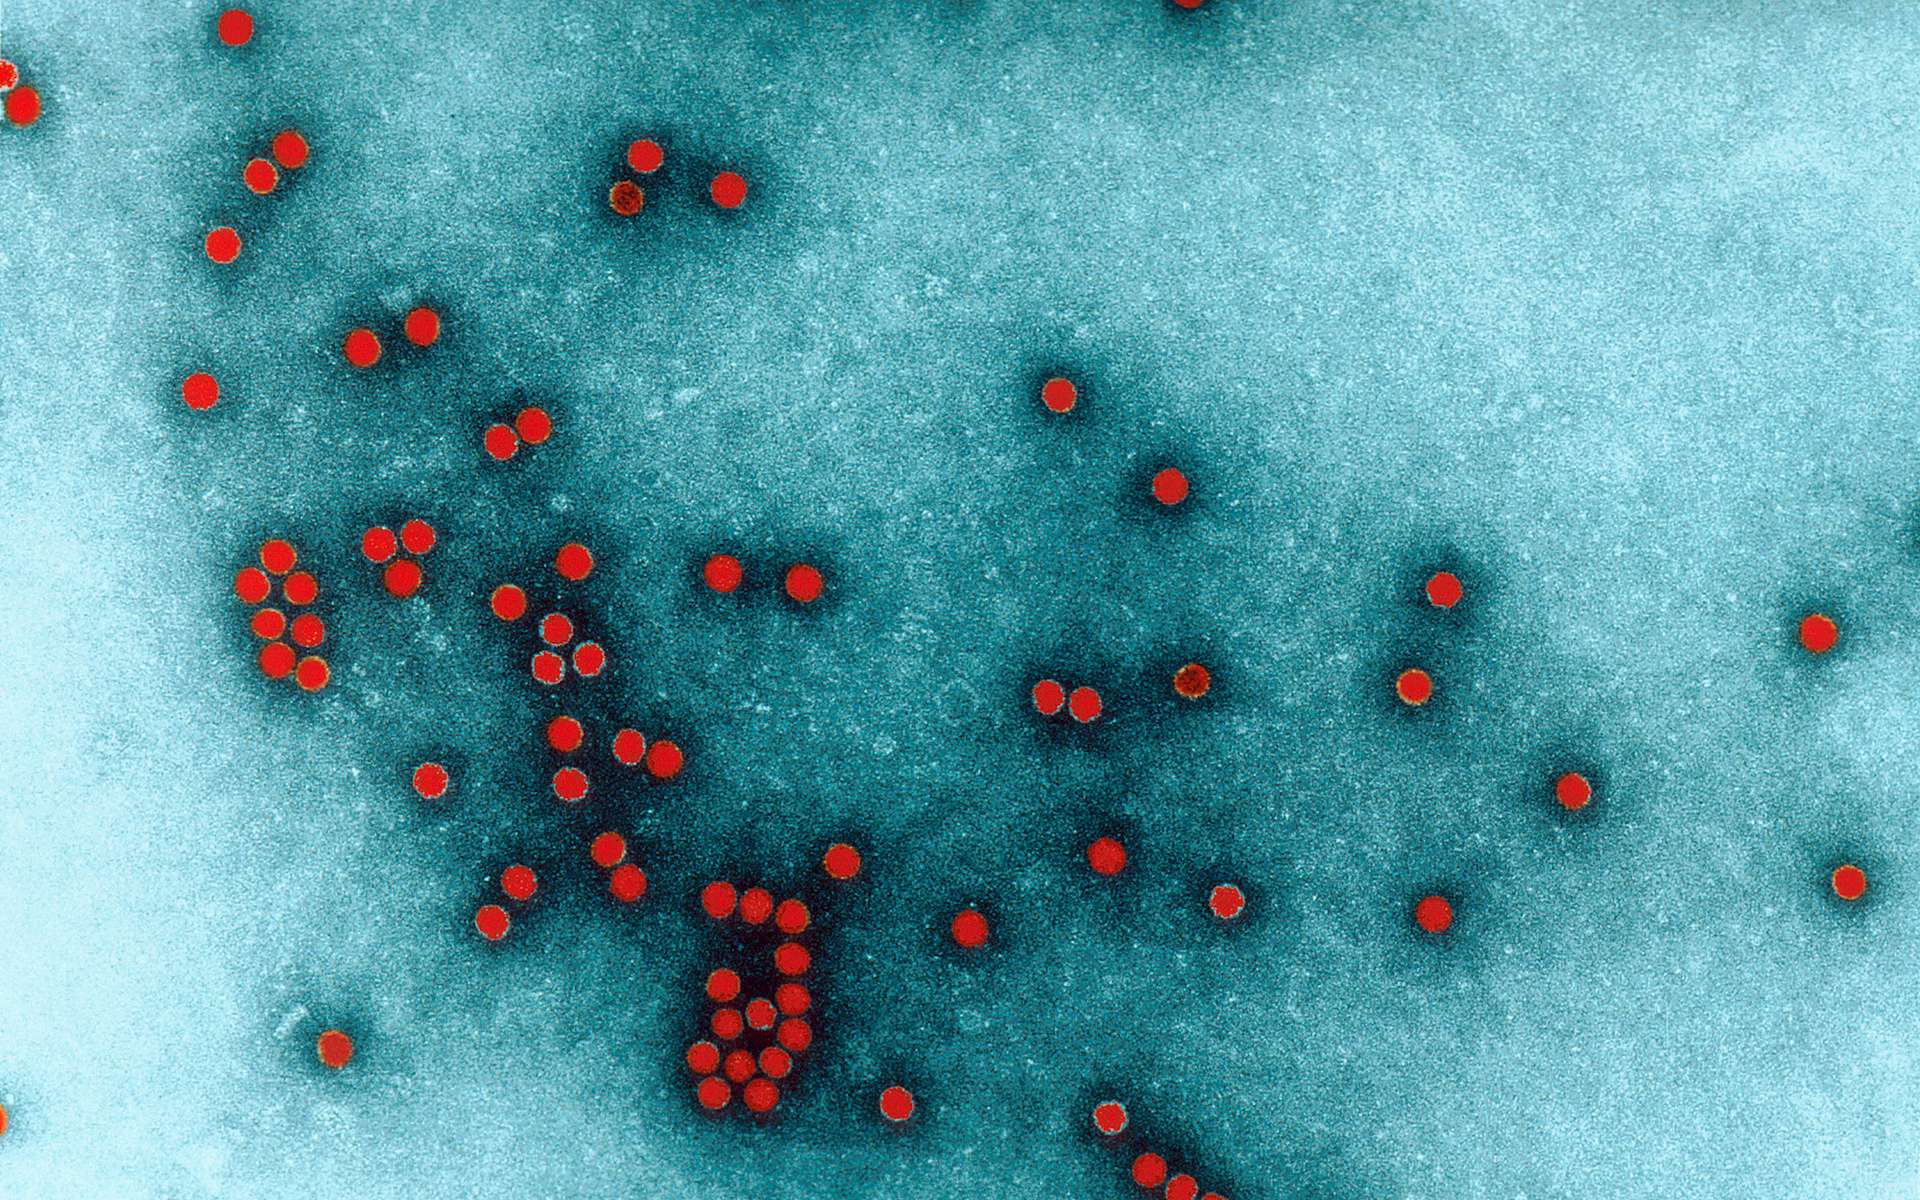 Un cas confirmé de poliomyélite aux États-Unis, des centaines d'autres personnes peut-être infectées